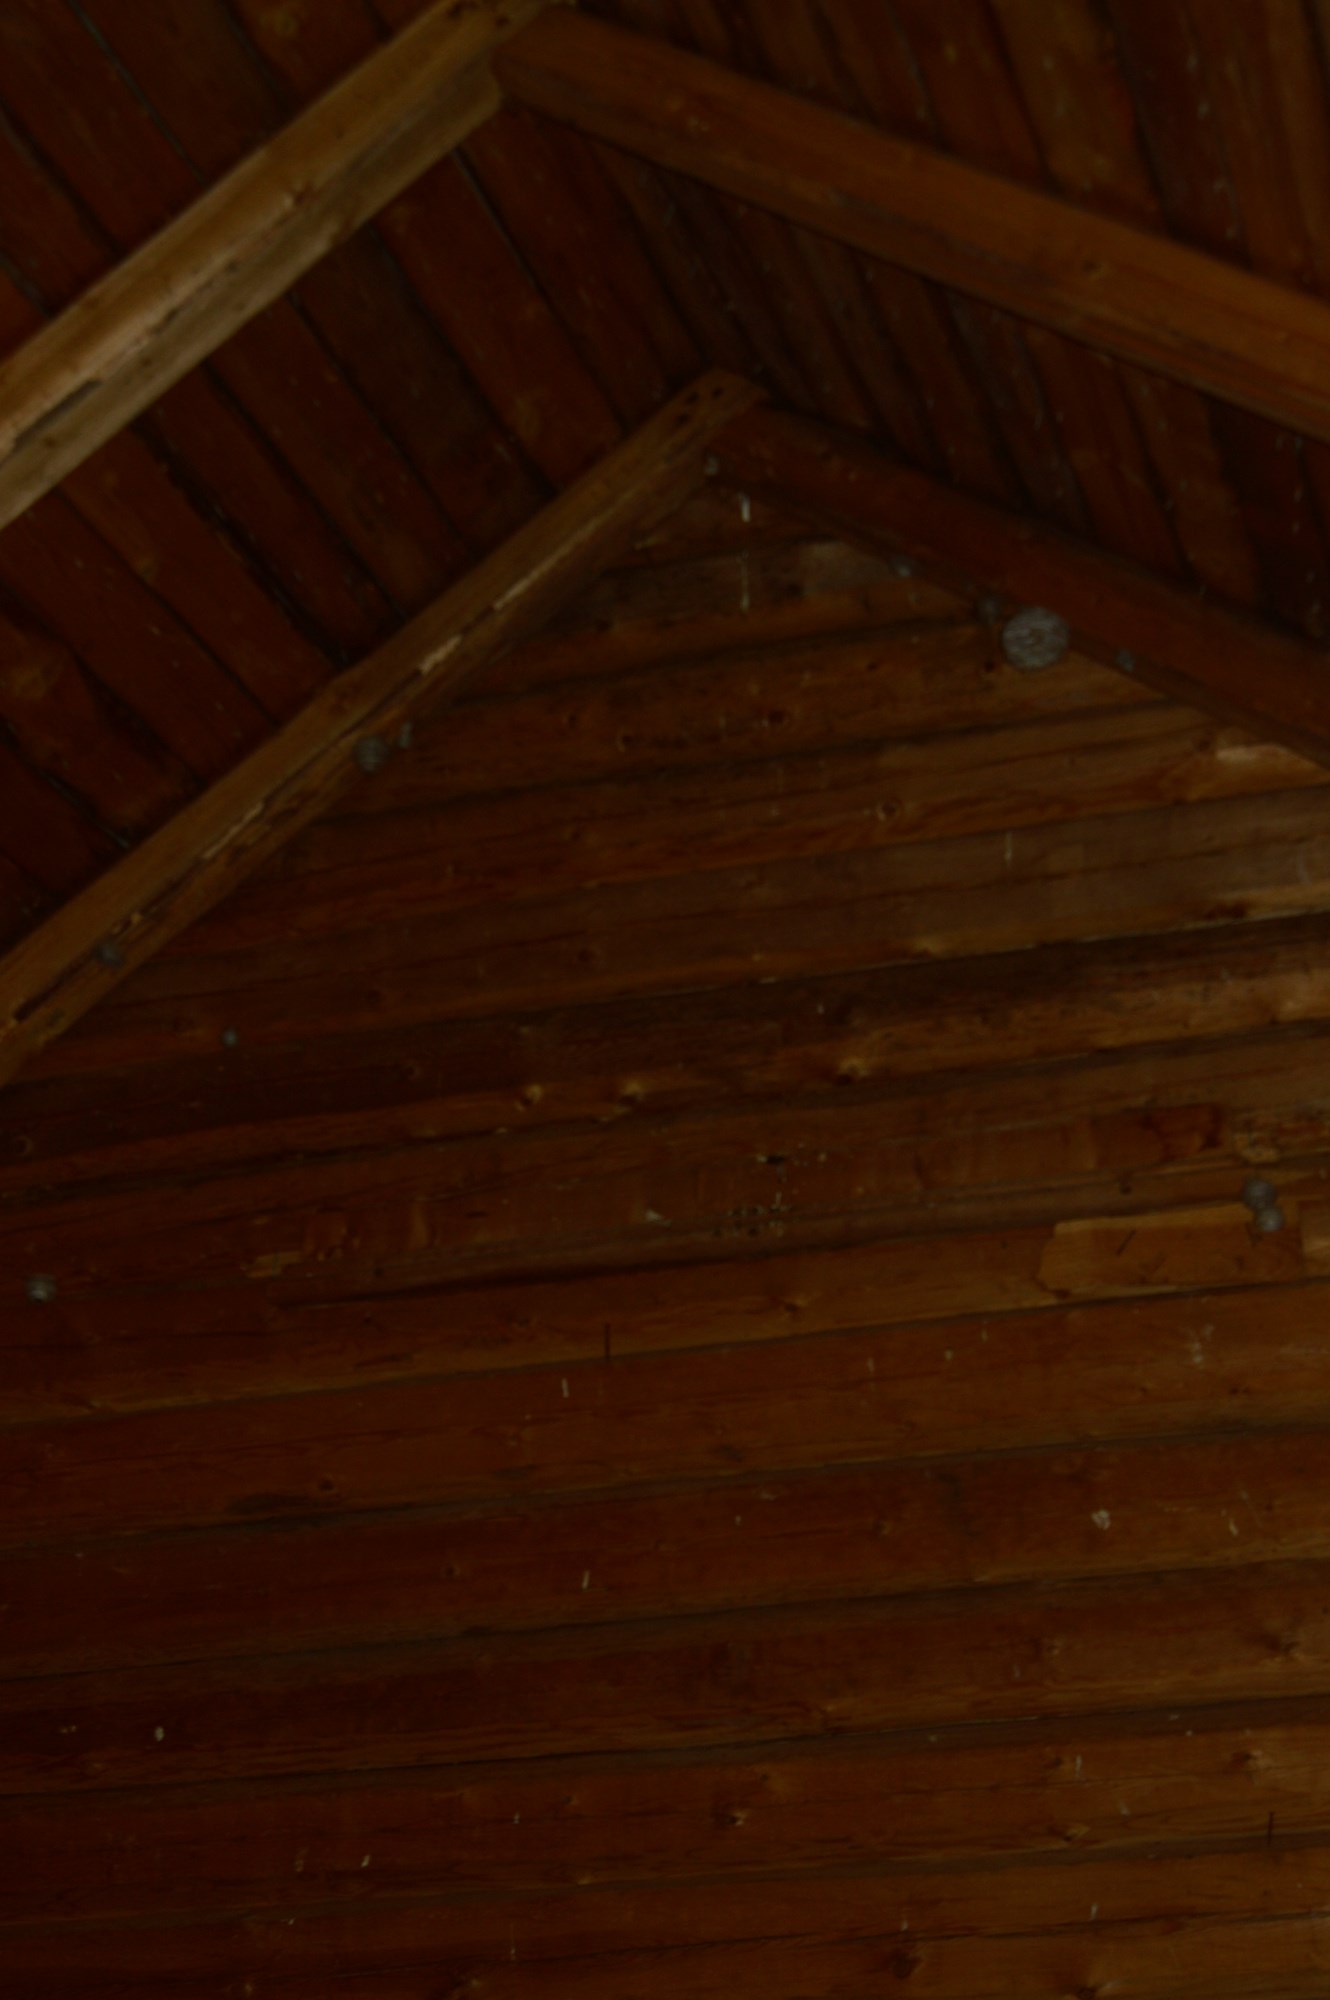 Isolere loft i gammelt tømmerhus - _DSC0365.JPG - Mindlink